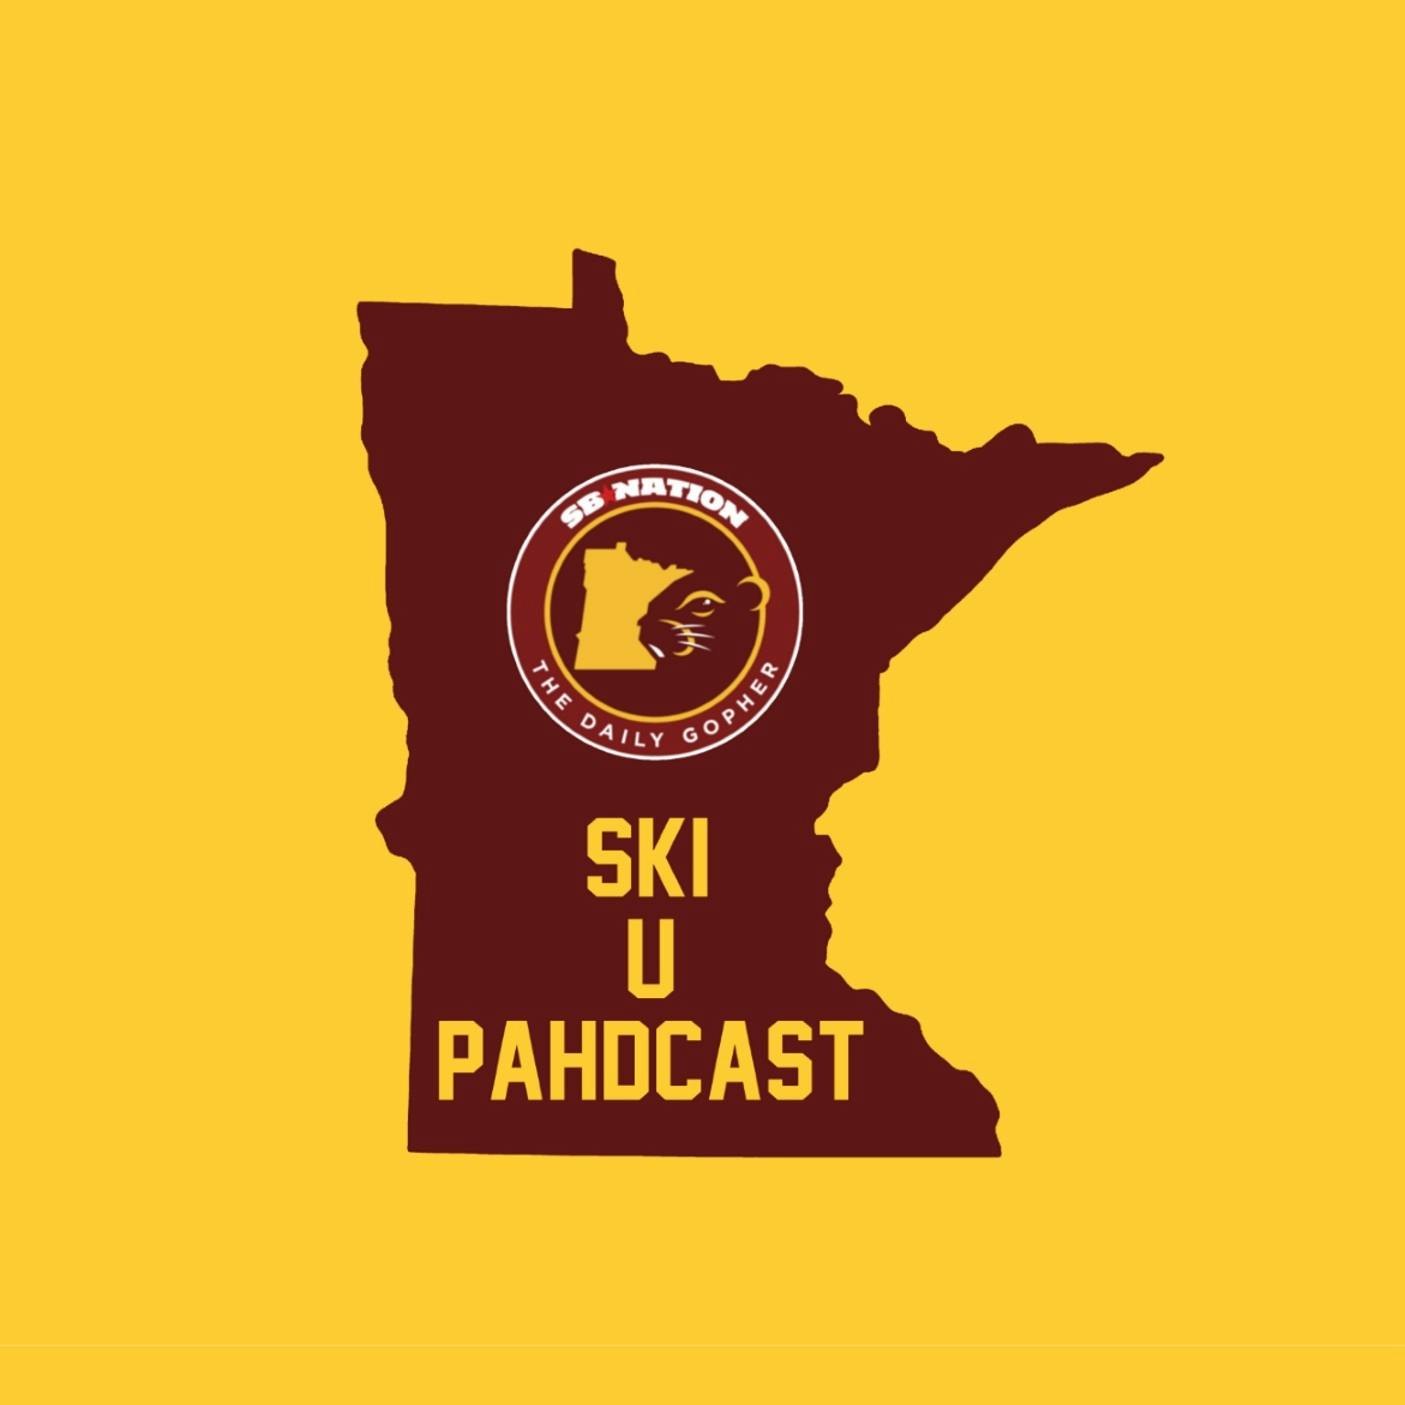 Ski-U-Pahdcast - Ep 6.02: Game week is here!